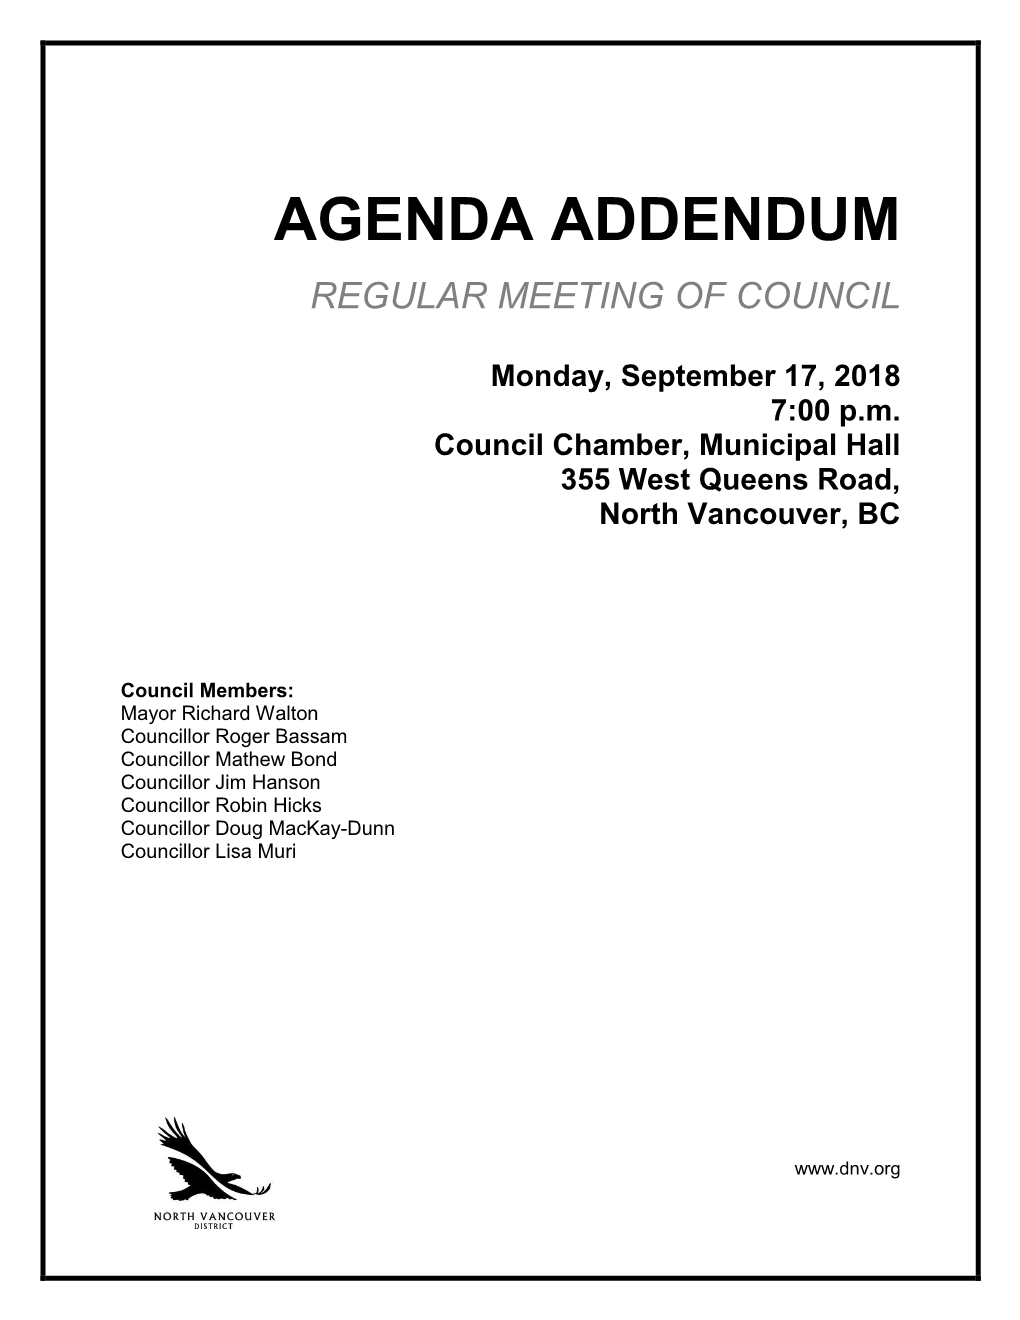 Agenda Addendum Regular Meeting of Council